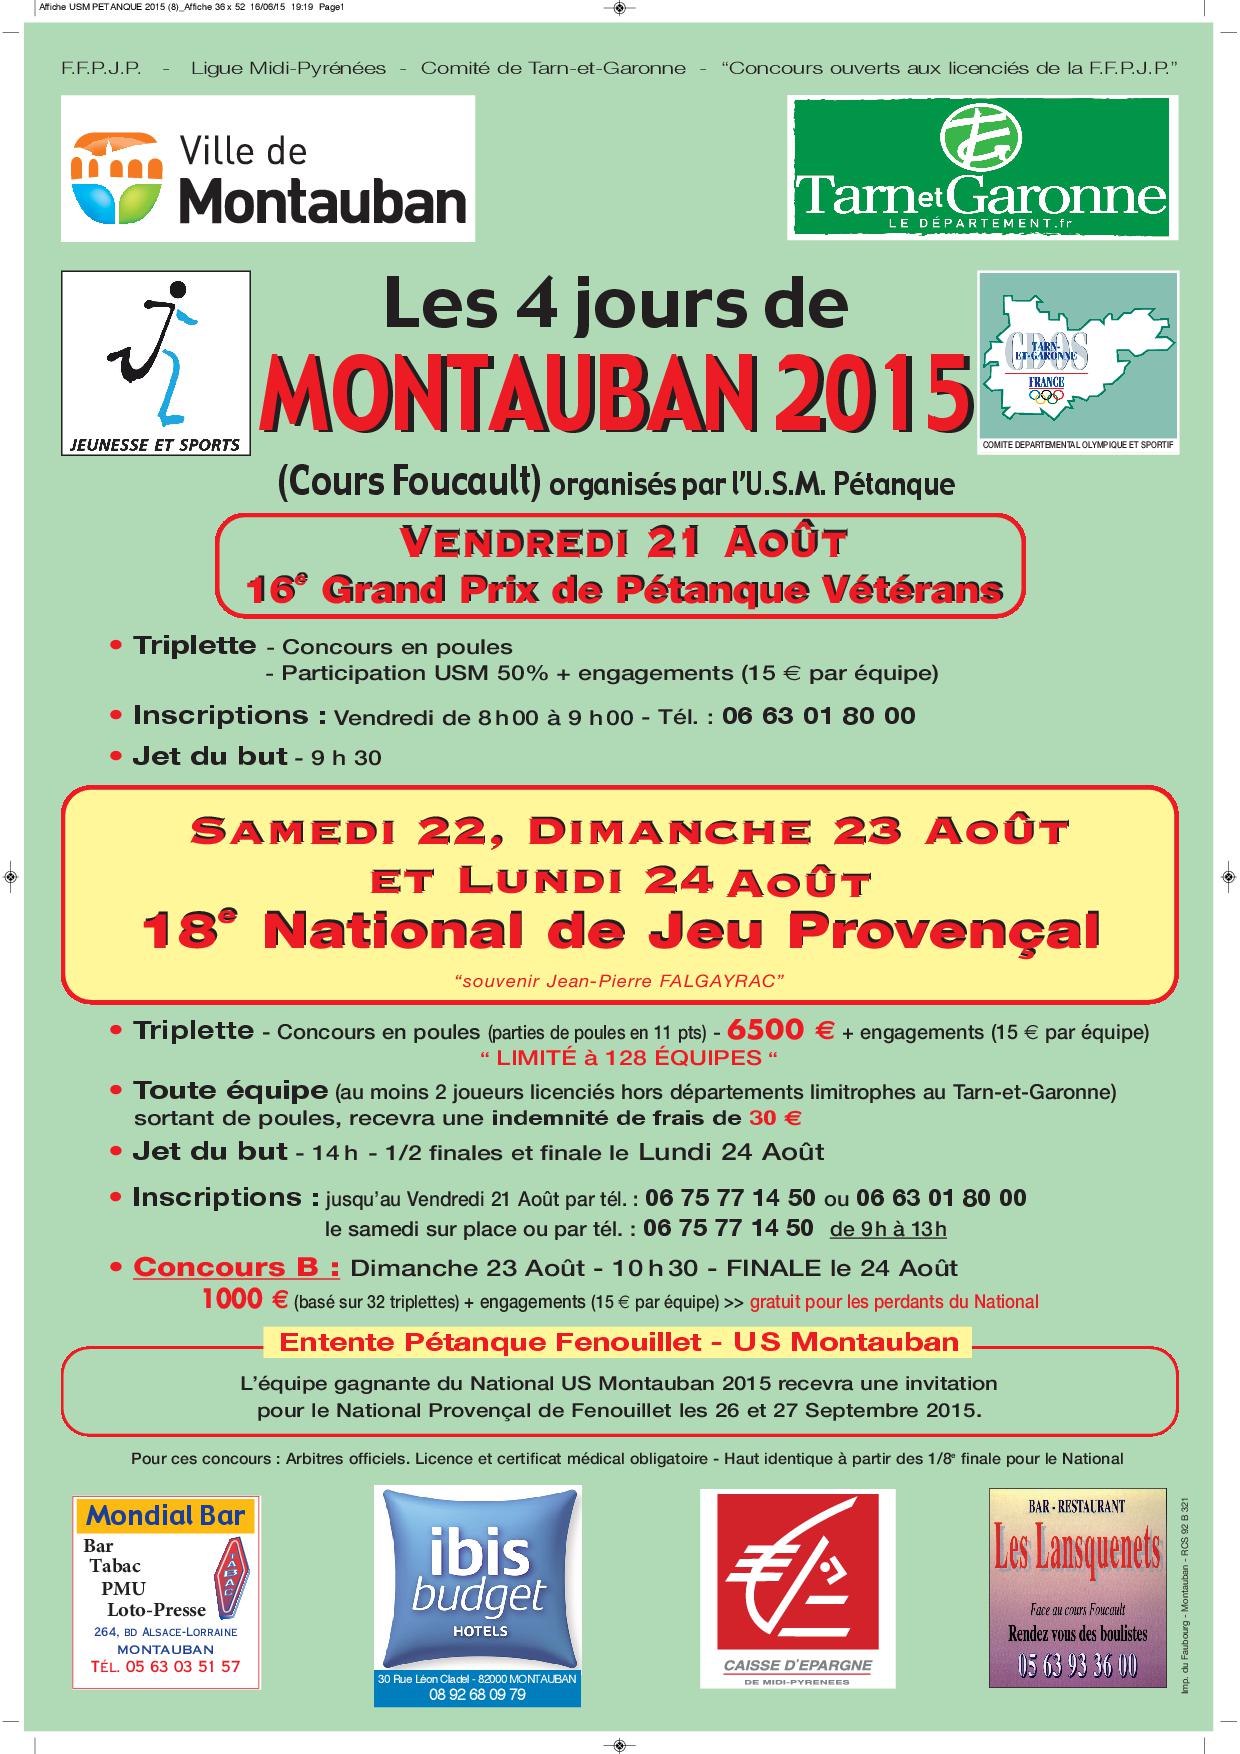 18éme National de Montauban du 22 au 23 AOUT 2015